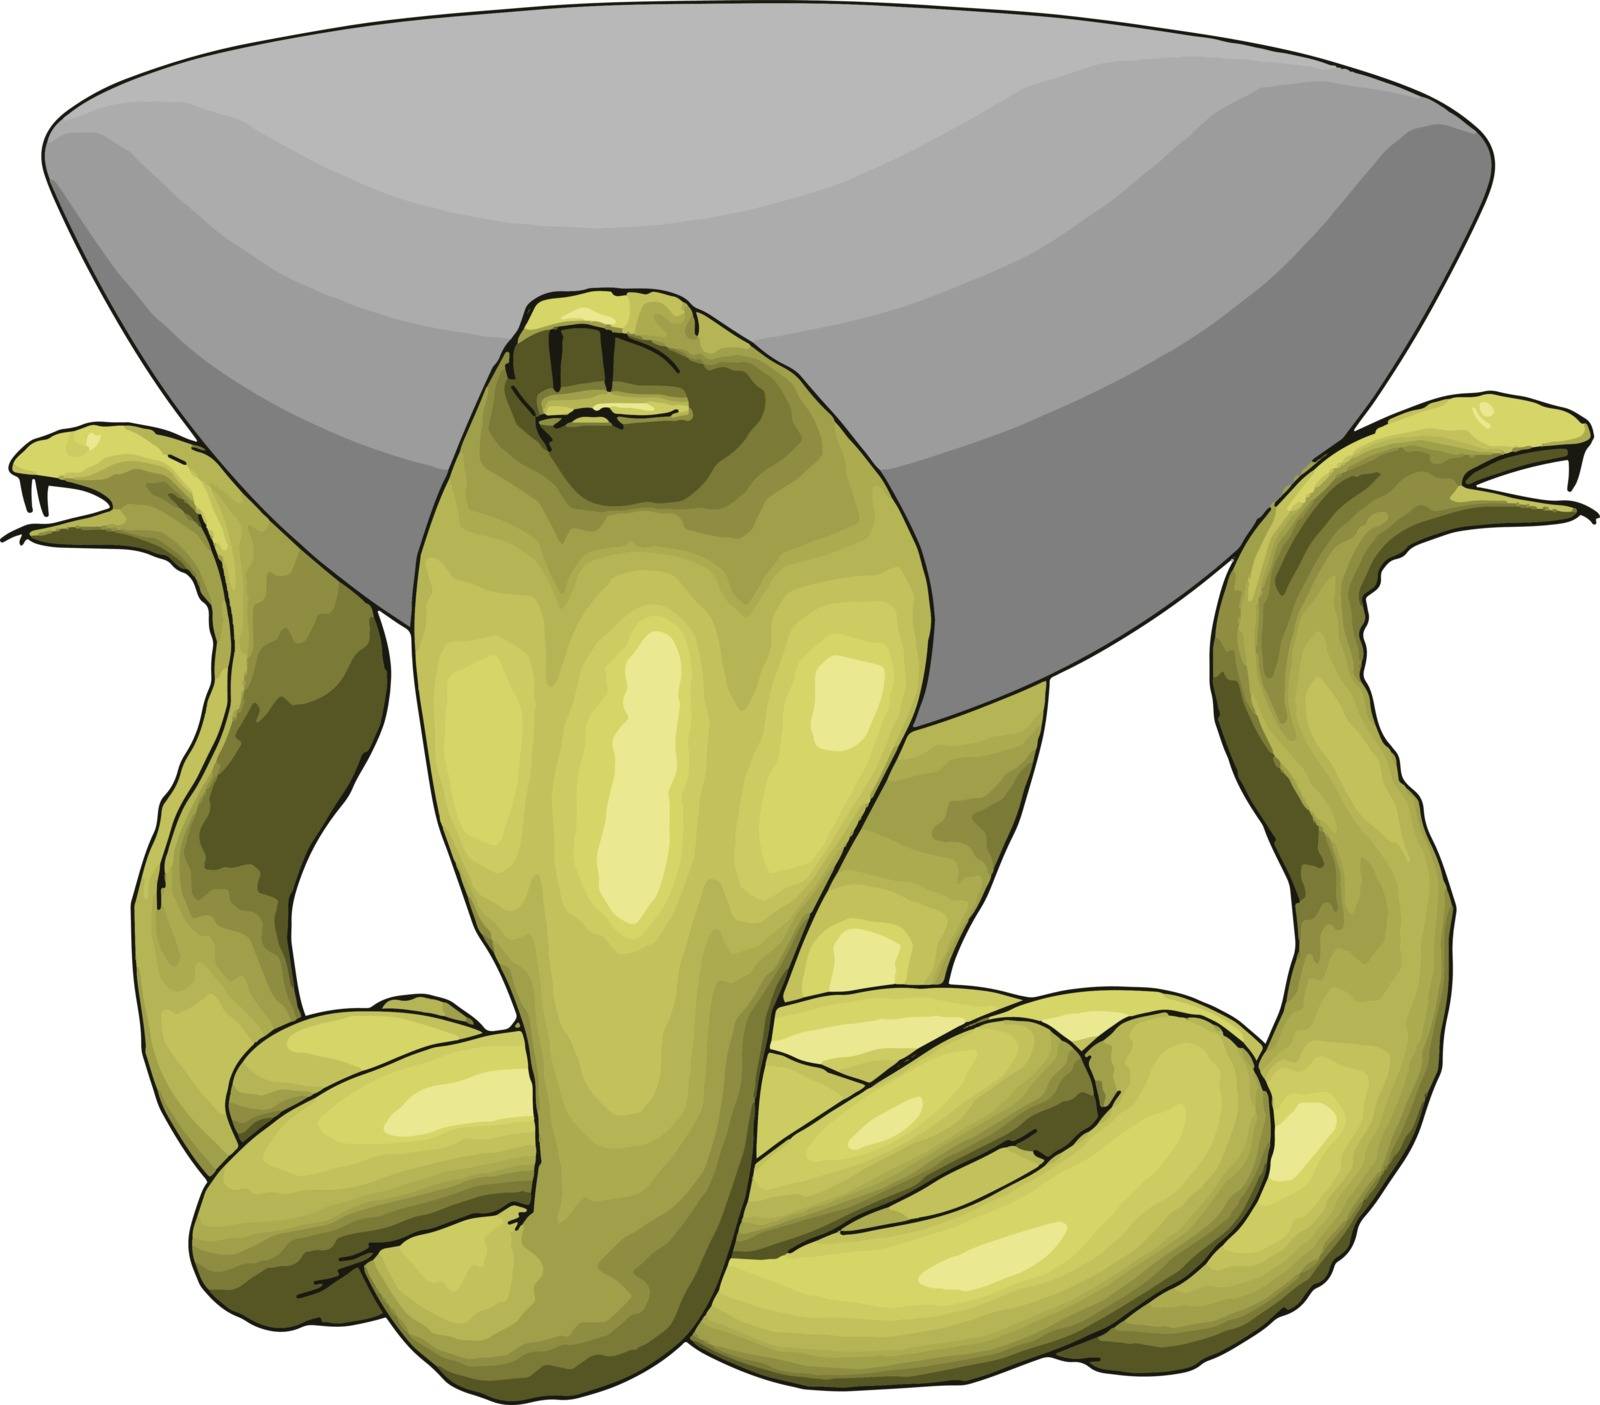 Yellow snakes holding bowl, illustration, vector on white backgr by Morphart